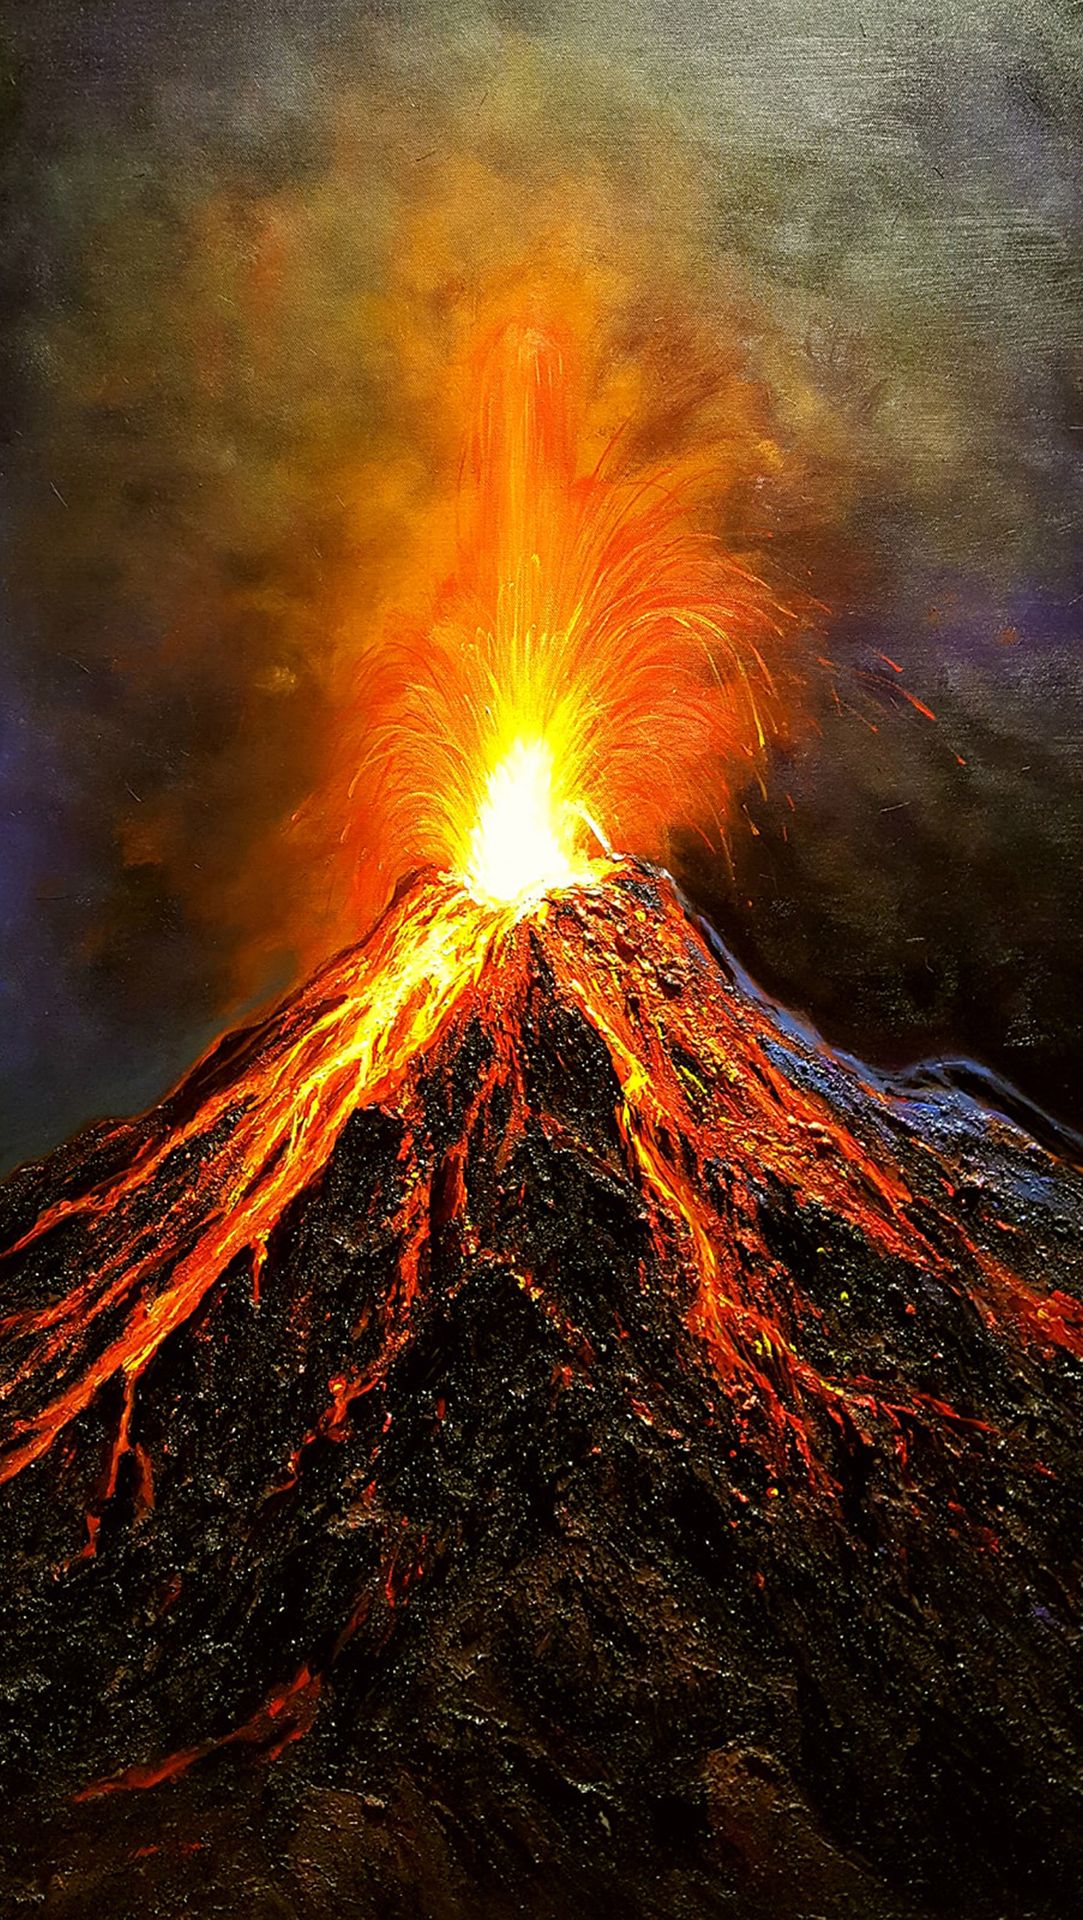 Đắm mình trong tinh vân khói núi lửa và cảm nhận sự mạnh mẽ của tự nhiên. Hình ảnh của núi lửa phun trào sẽ đưa bạn đến những chuyến phiêu lưu có một không hai và hiểu thêm về cách tự nhiên hoạt động như thế nào. Hãy để tâm hồn của bạn được cảm nhận những trải nghiệm tuyệt vời và xuất sắc nhất.